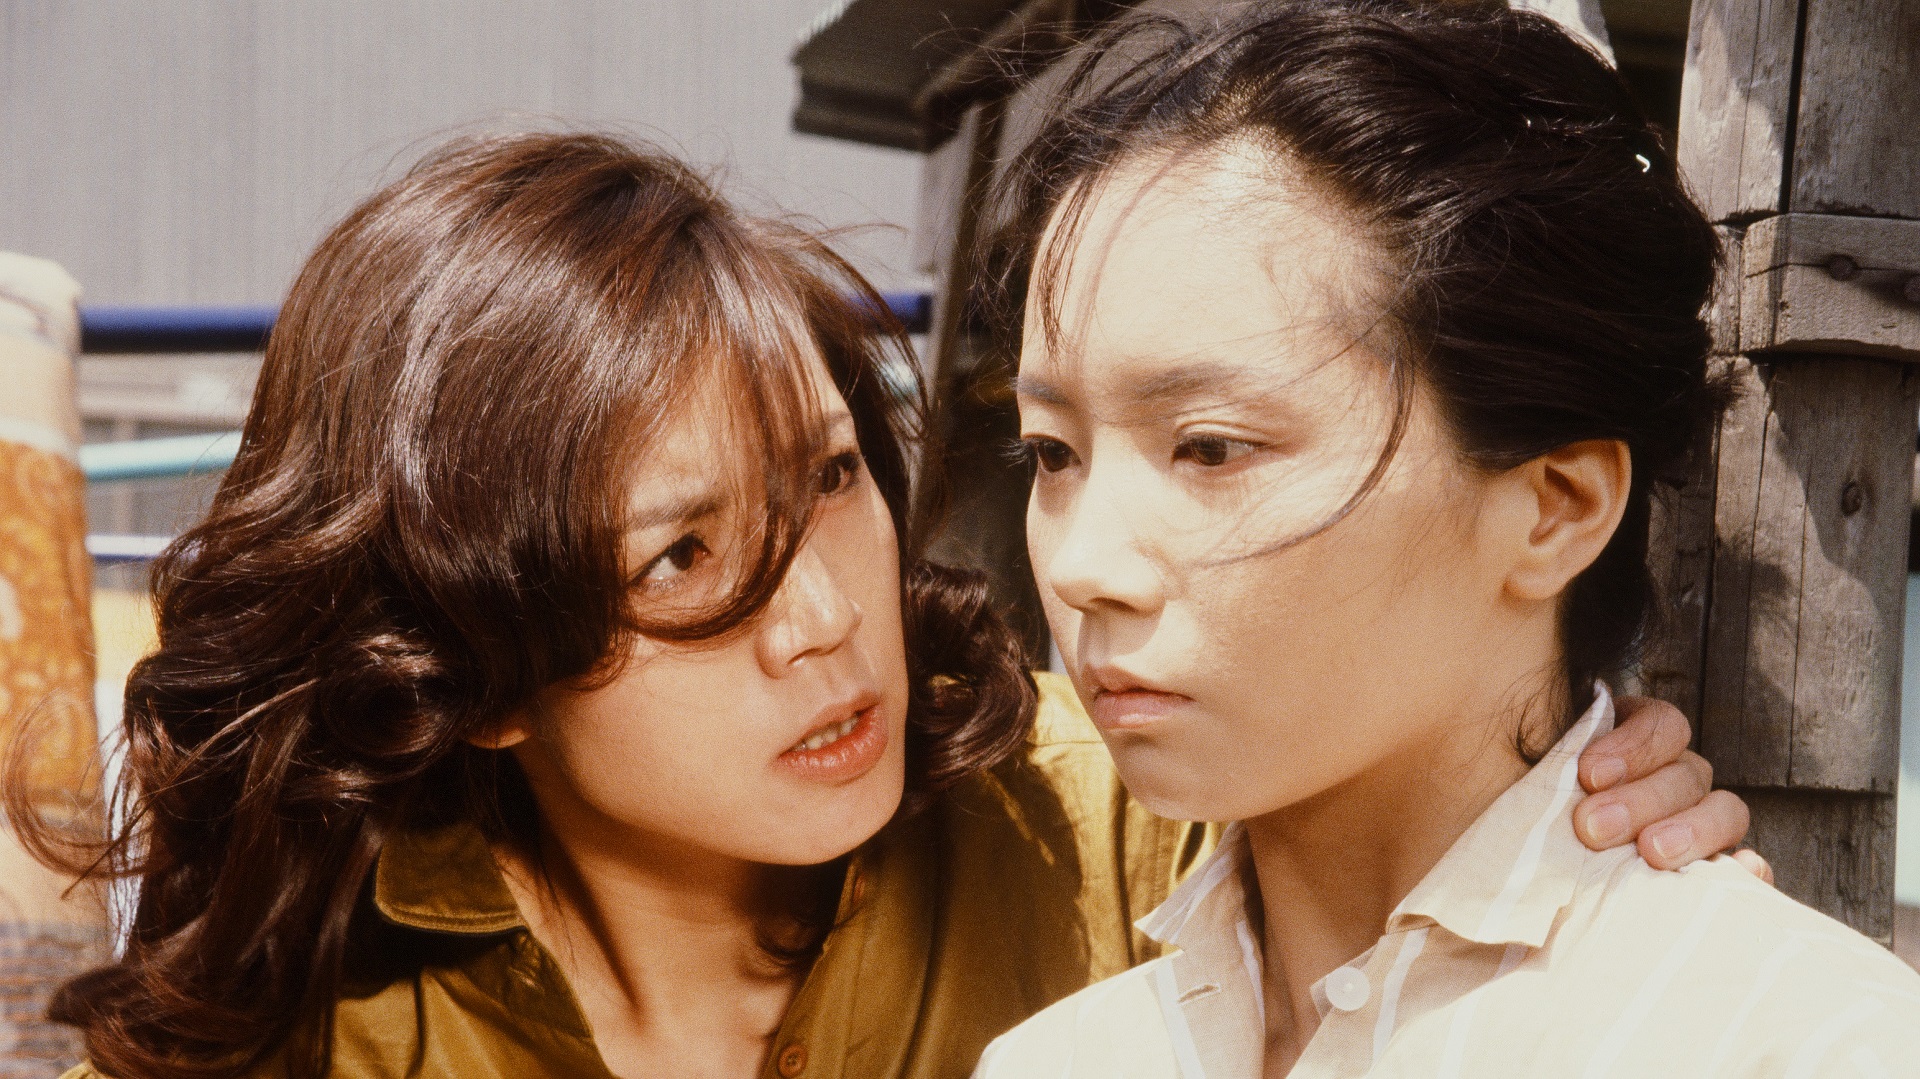 あの頃のロマンポルノ】日本映画批評『天使のはらわた 名美』 |キネマ 